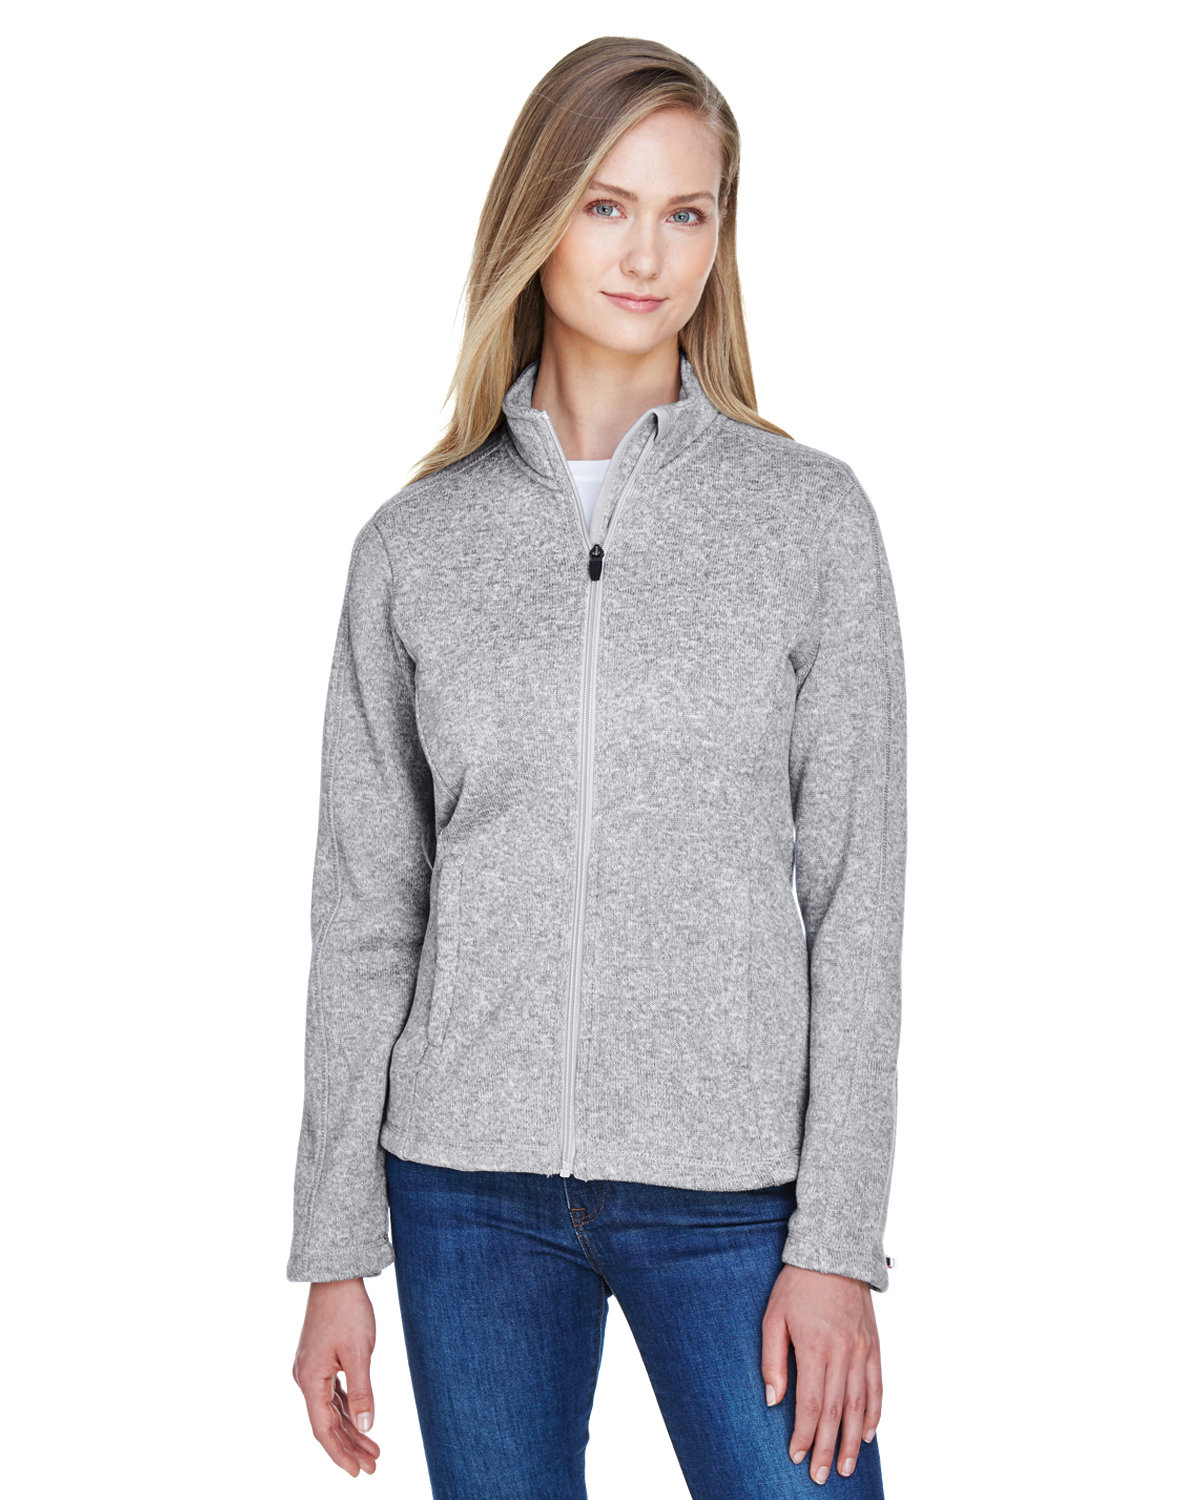 Devon & Jones Ladies' Bristol Full-Zip Sweater Fleece Jacket GREY HEATHER 